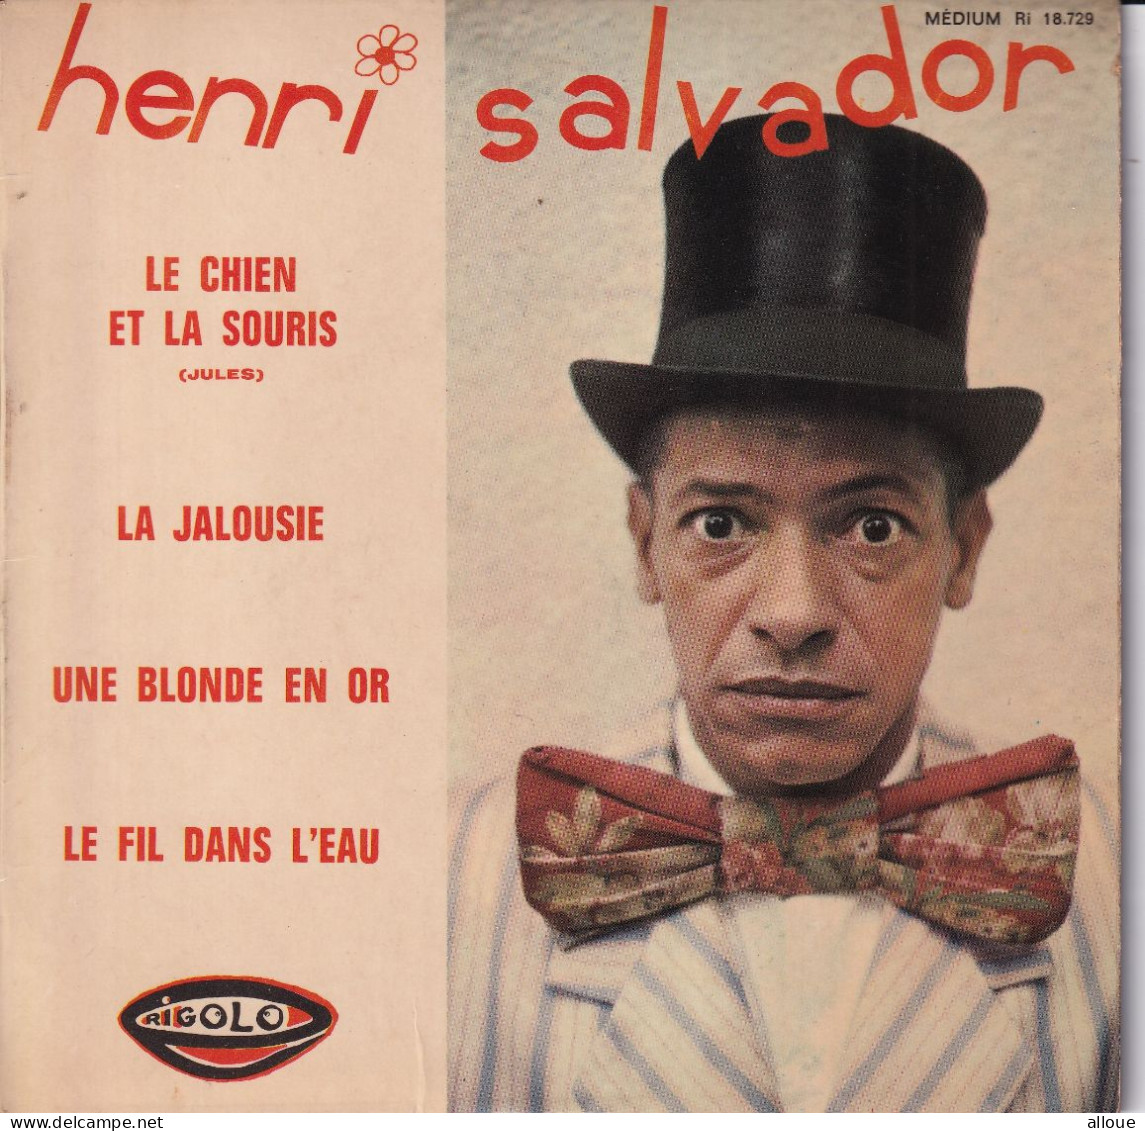 HENRI SALVADOR - FR EP - LE CHIEN ET LA SOURIS + 3 - Other - French Music